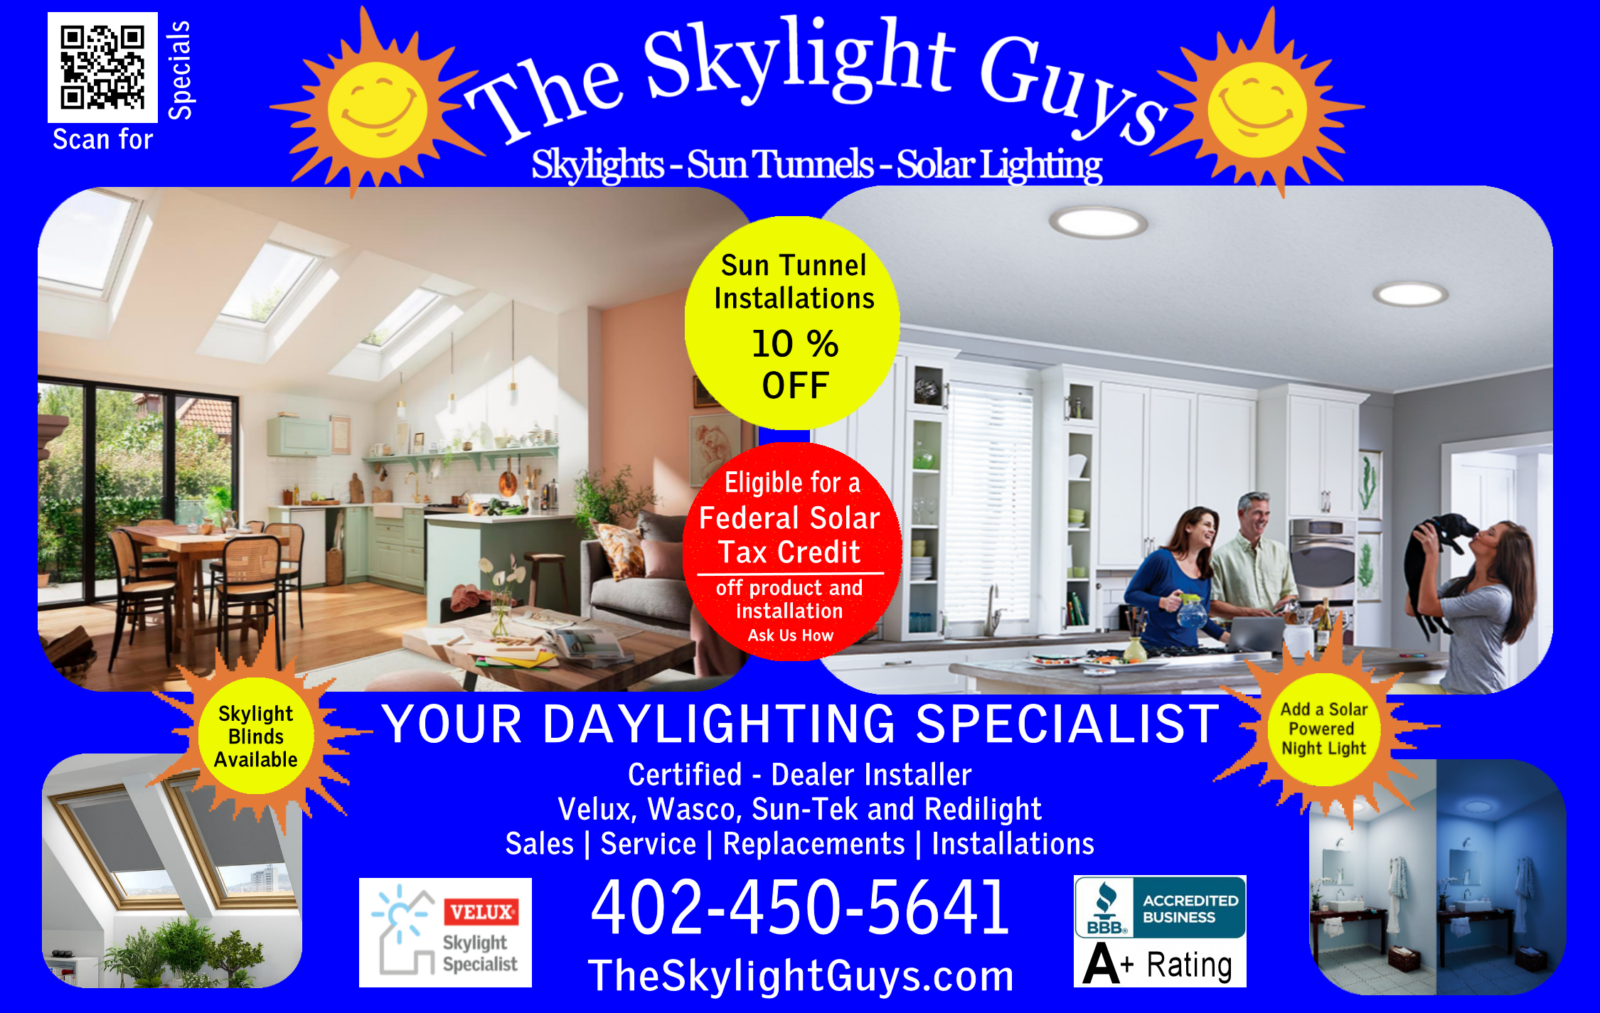 local Skylight specials for omaha nebraska and lincoln nebraska